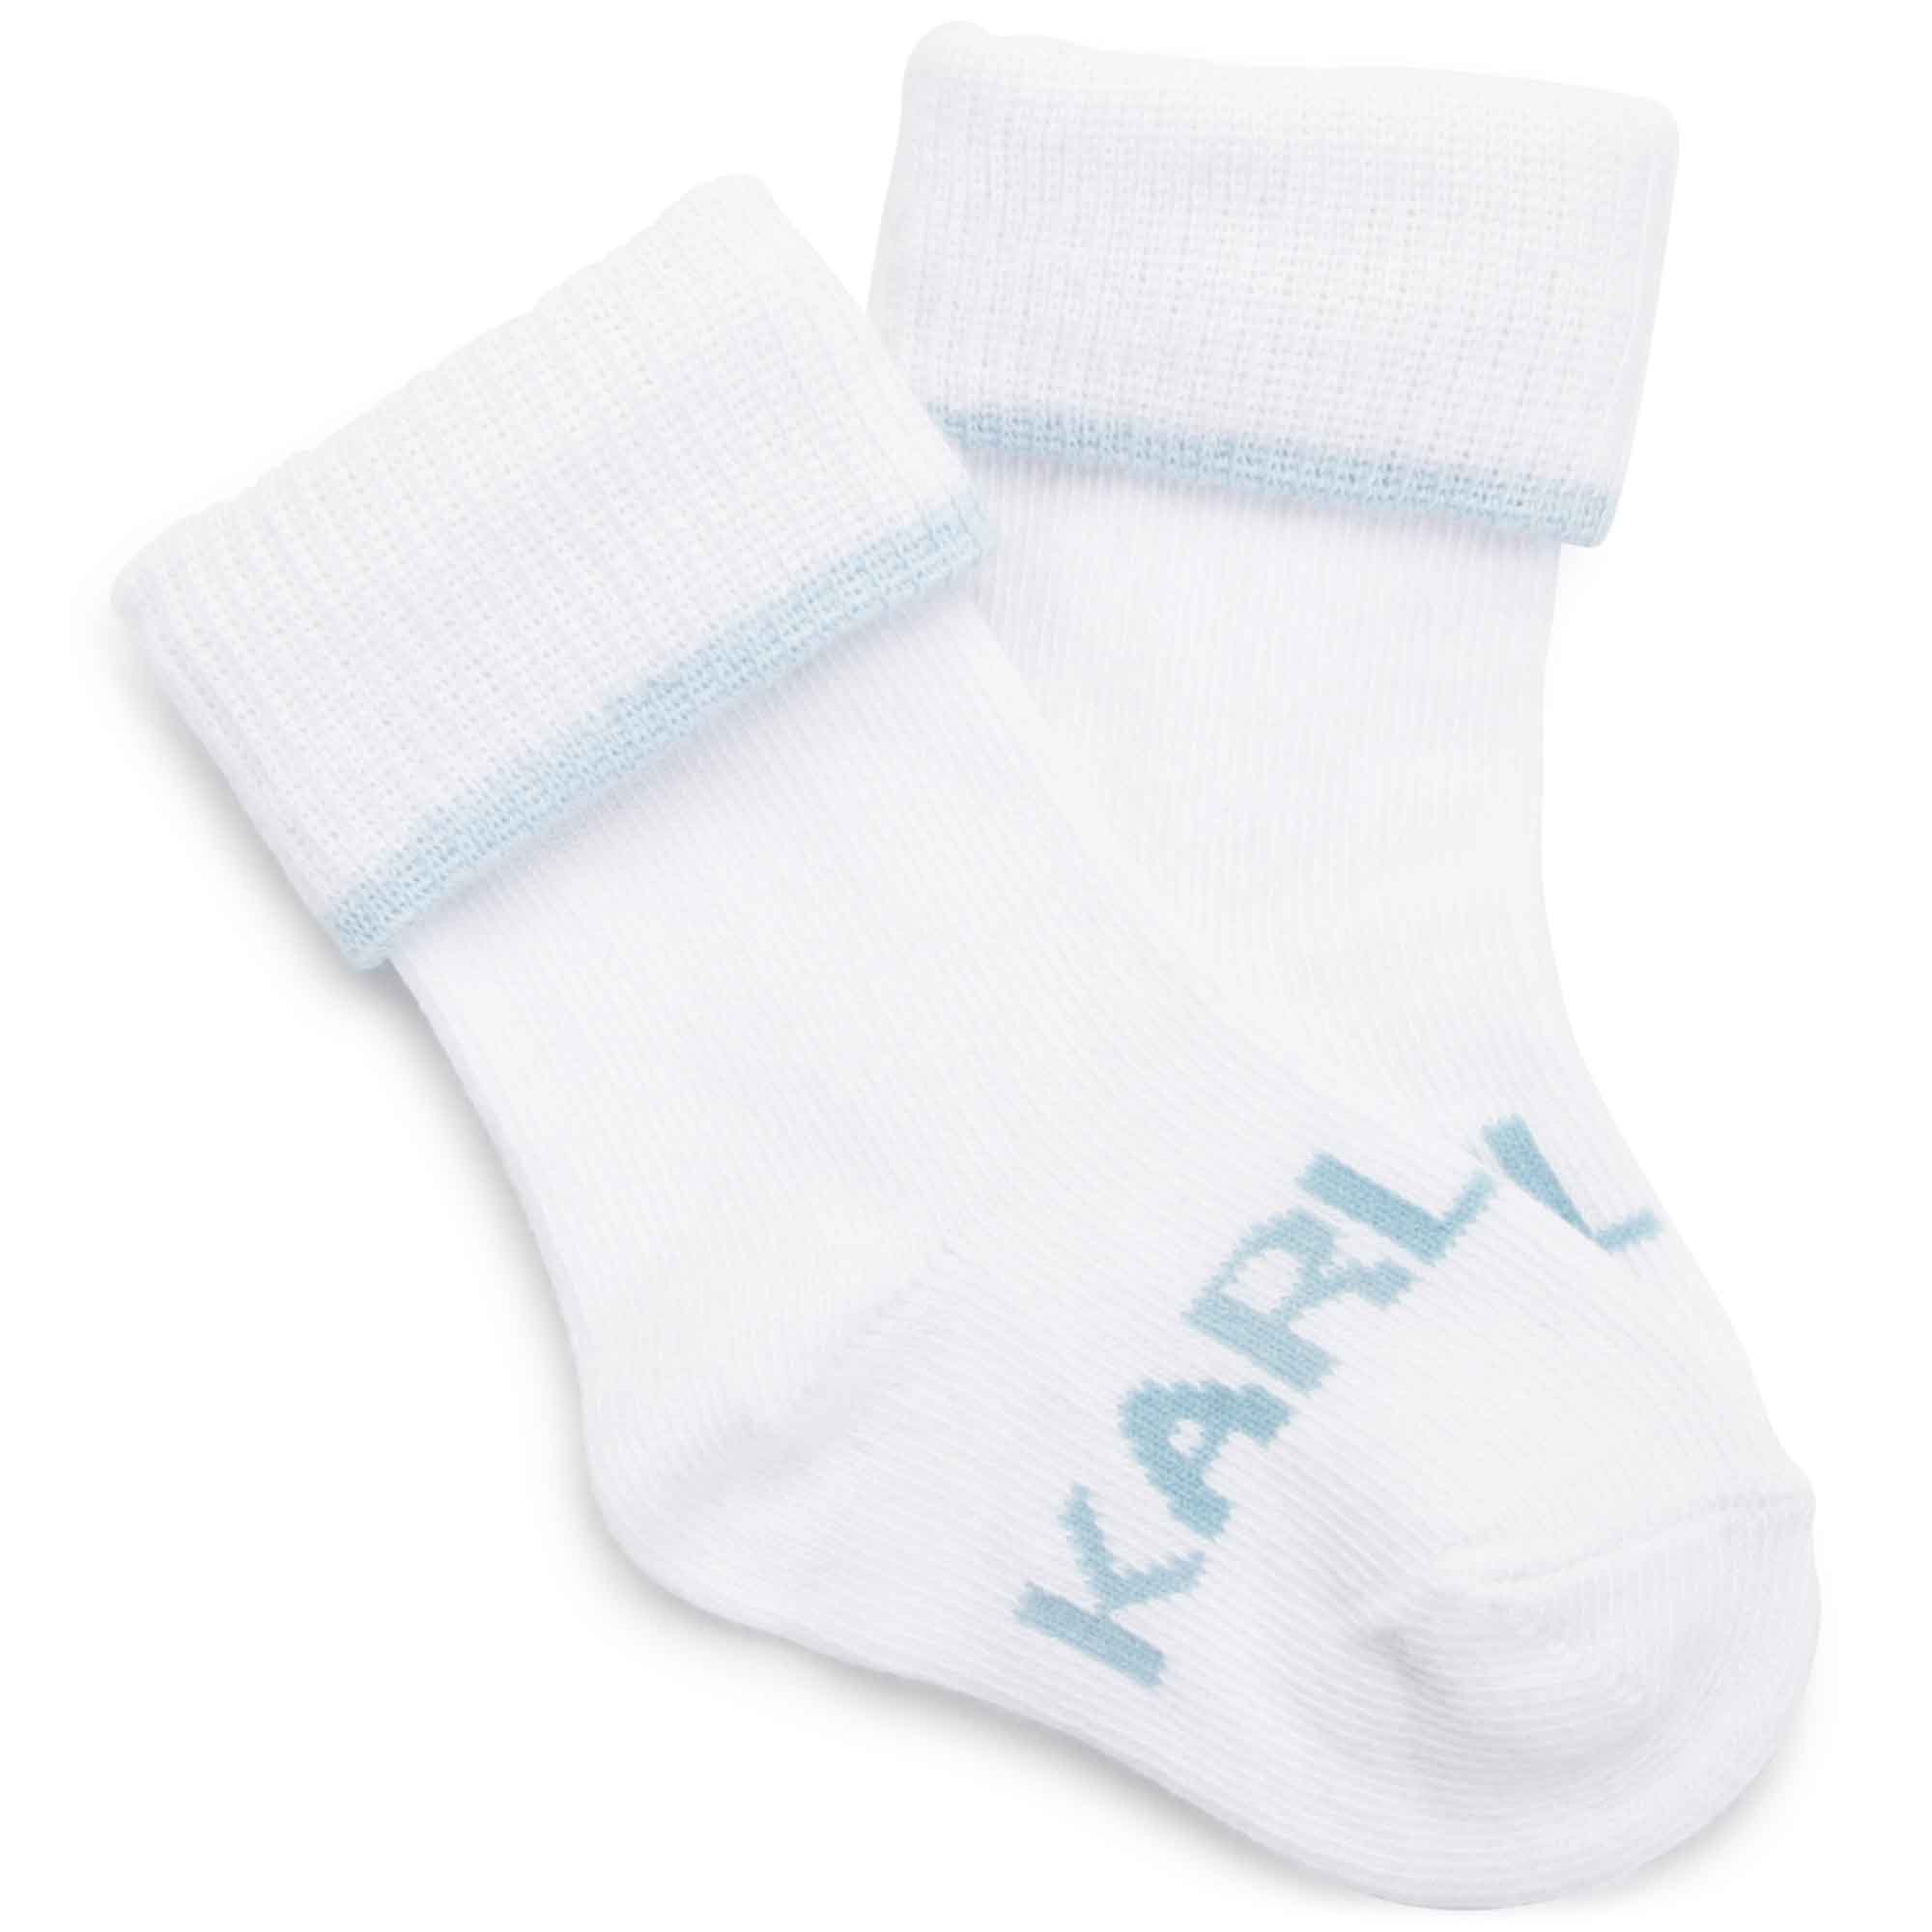 Set of 2 pairs of socks KARL LAGERFELD KIDS for UNISEX